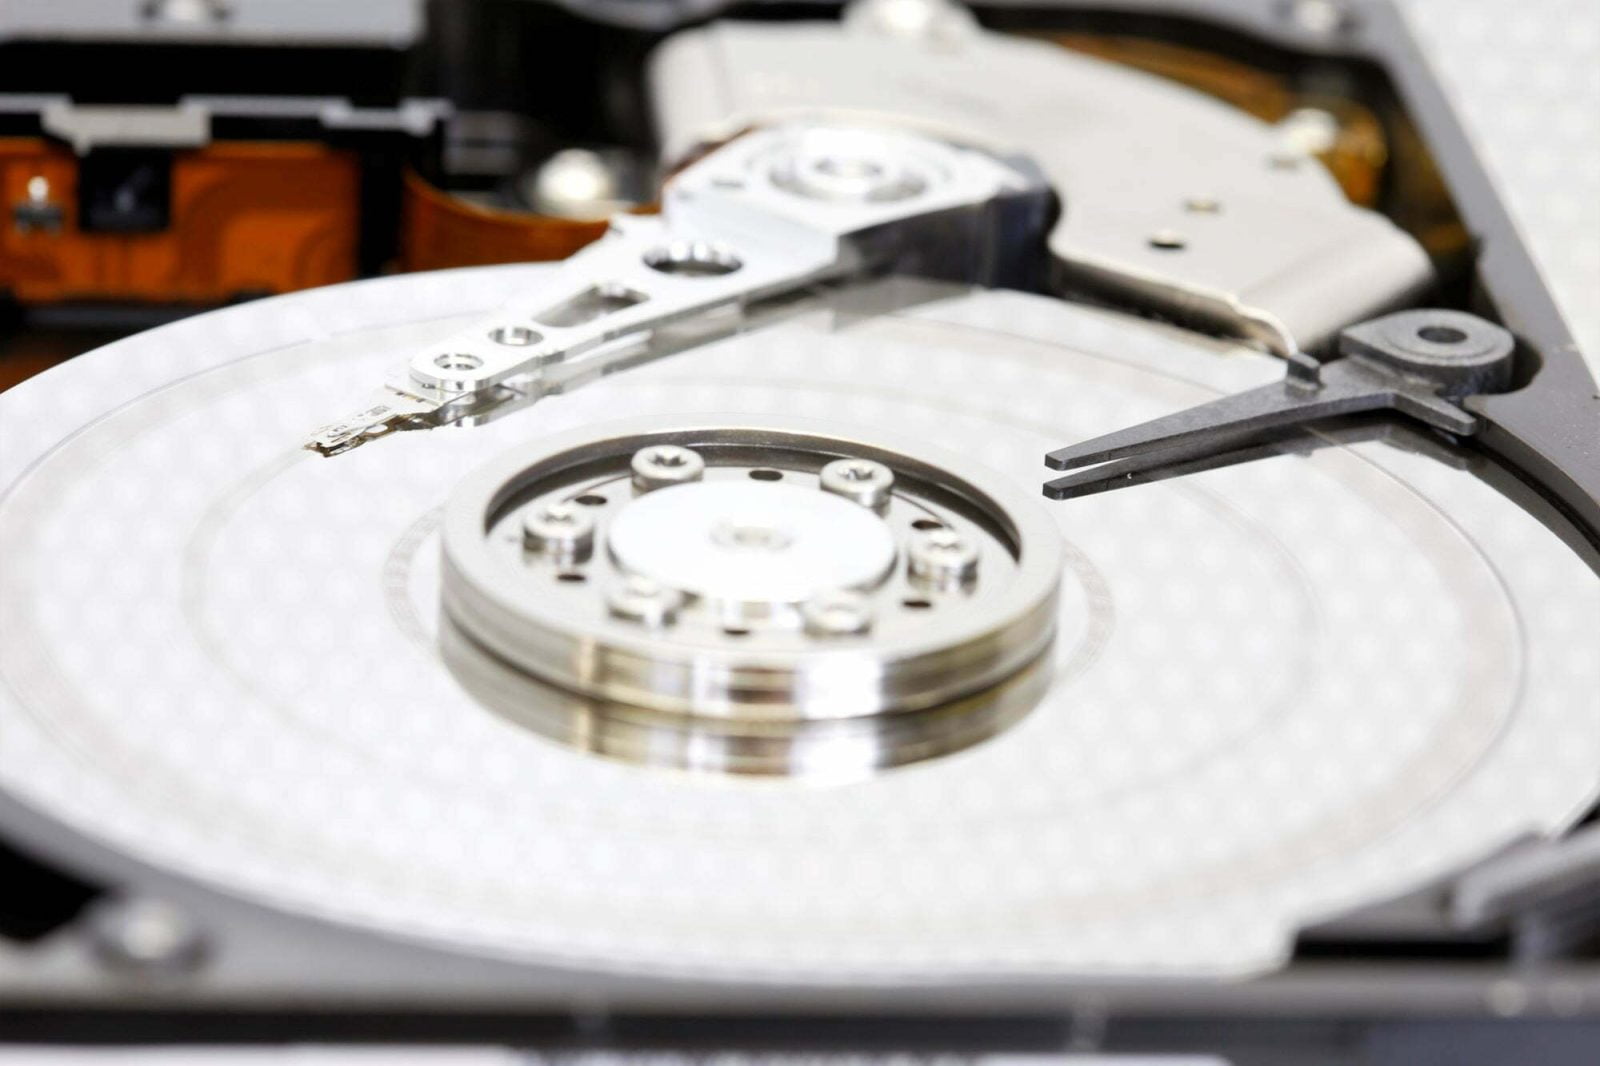 Wiederherstellung von Festplatten (HDD)